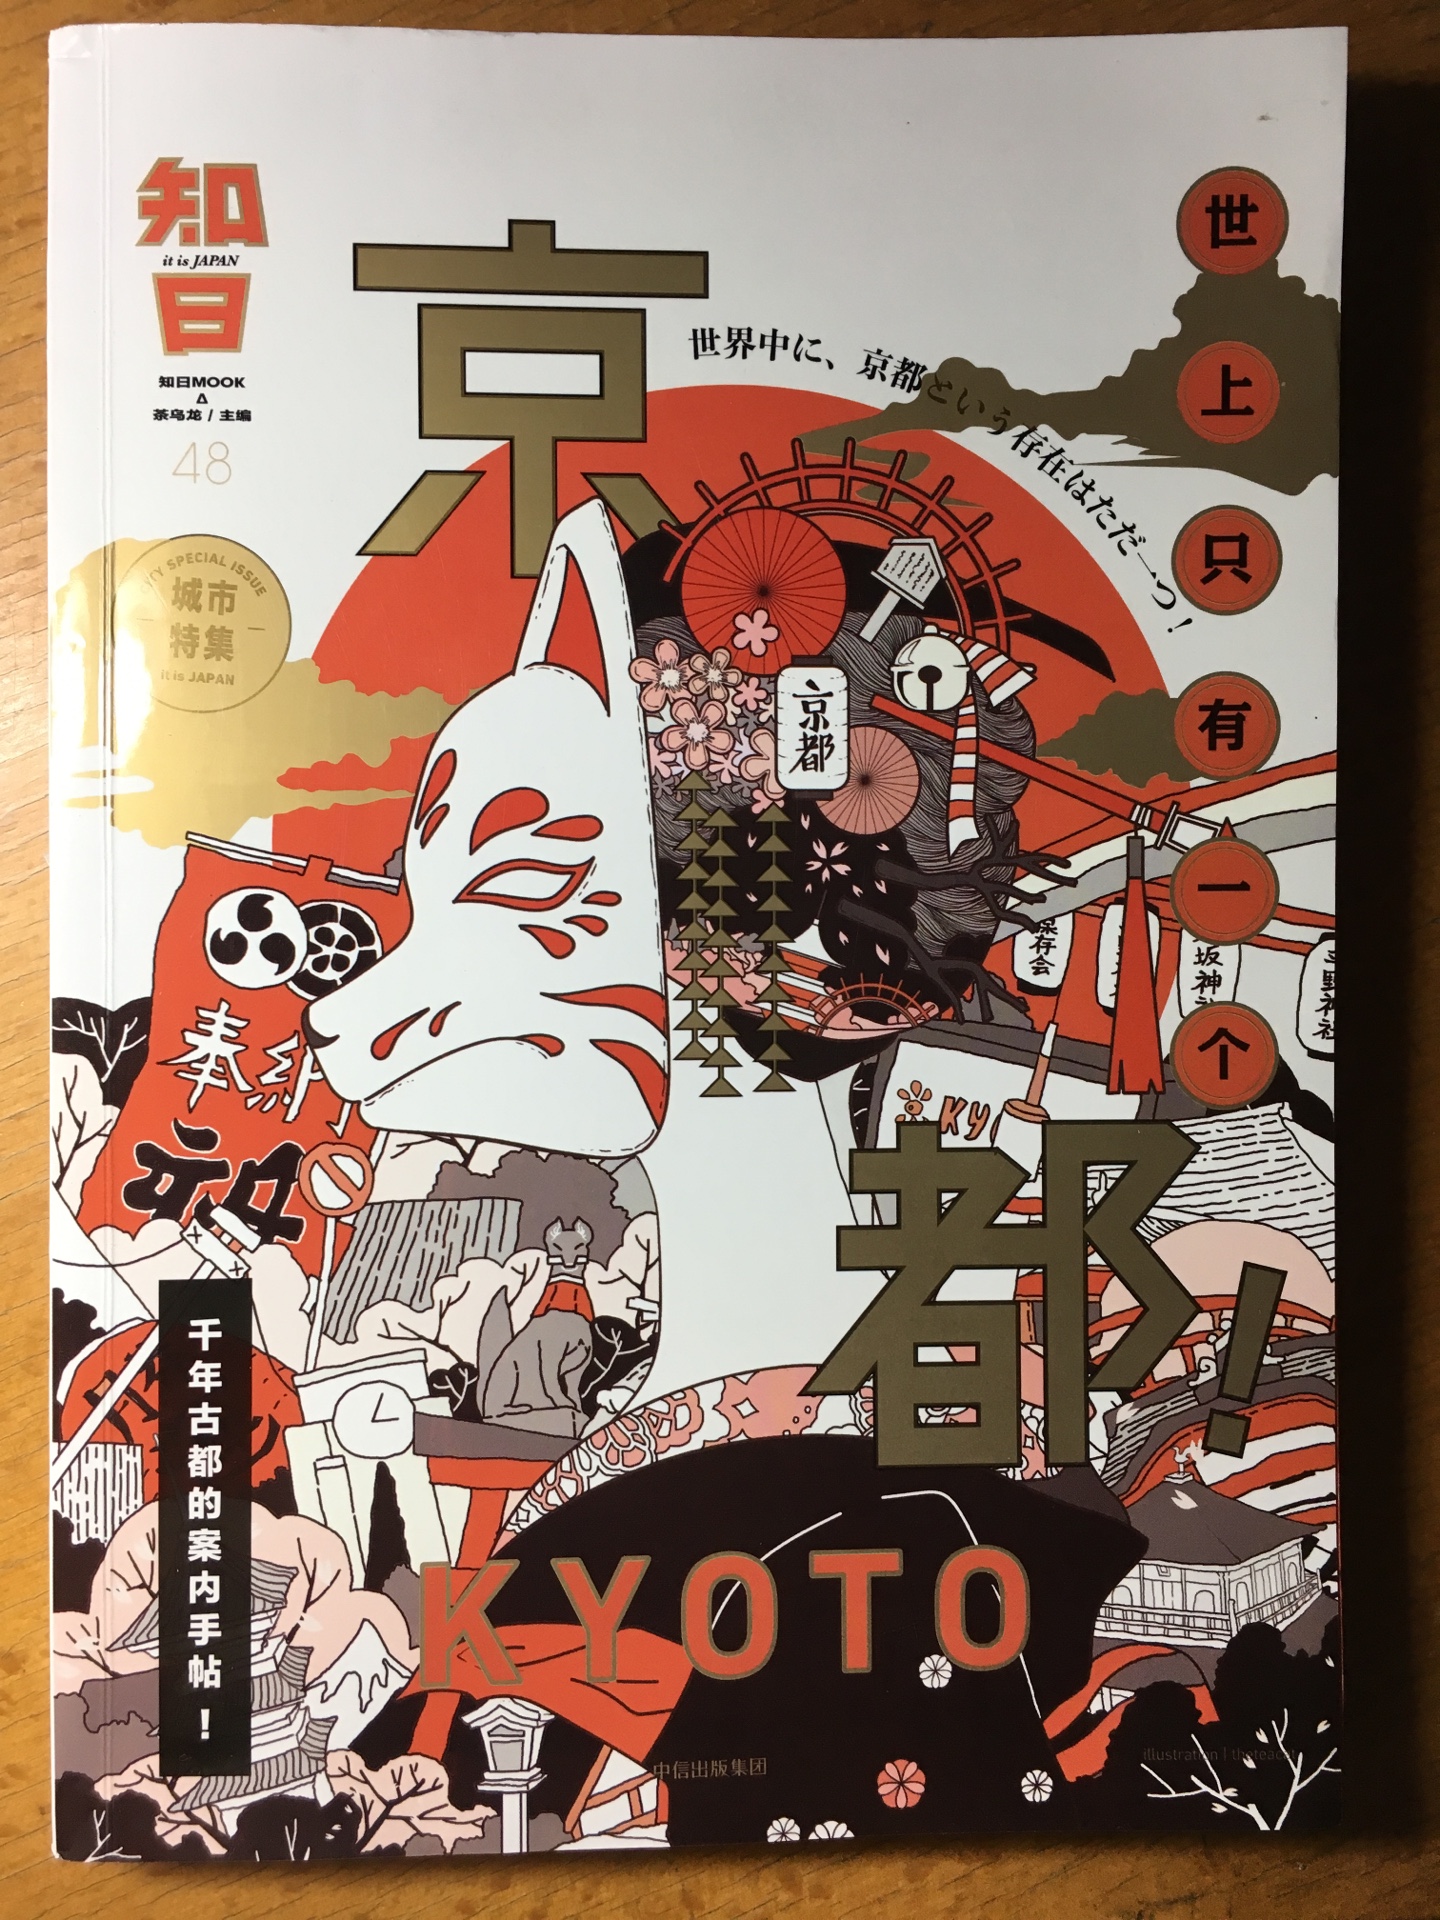 很喜欢这个系列的图书，深入解说日本的人文。